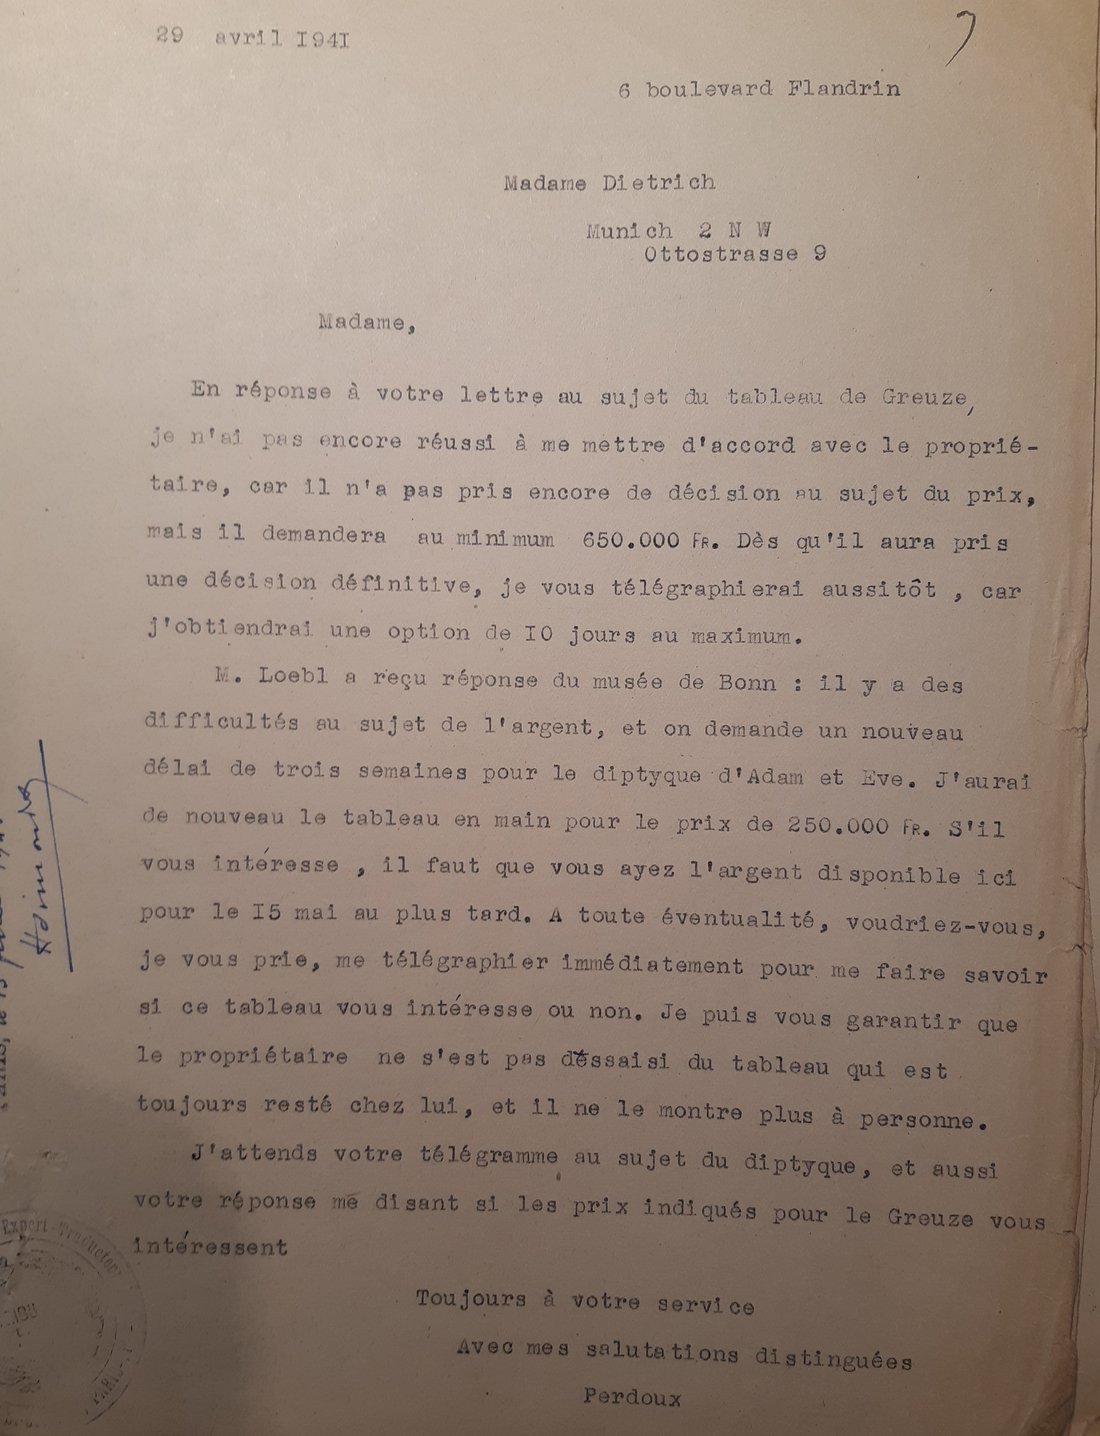 Lettre de Yves Perdoux à Maria Almas-Dietrich, 29 avril 1941, traduction française certifiée conforme établie dans le cadre de la procédure judiciaire. Source : Archives nationales, Z/6/577.